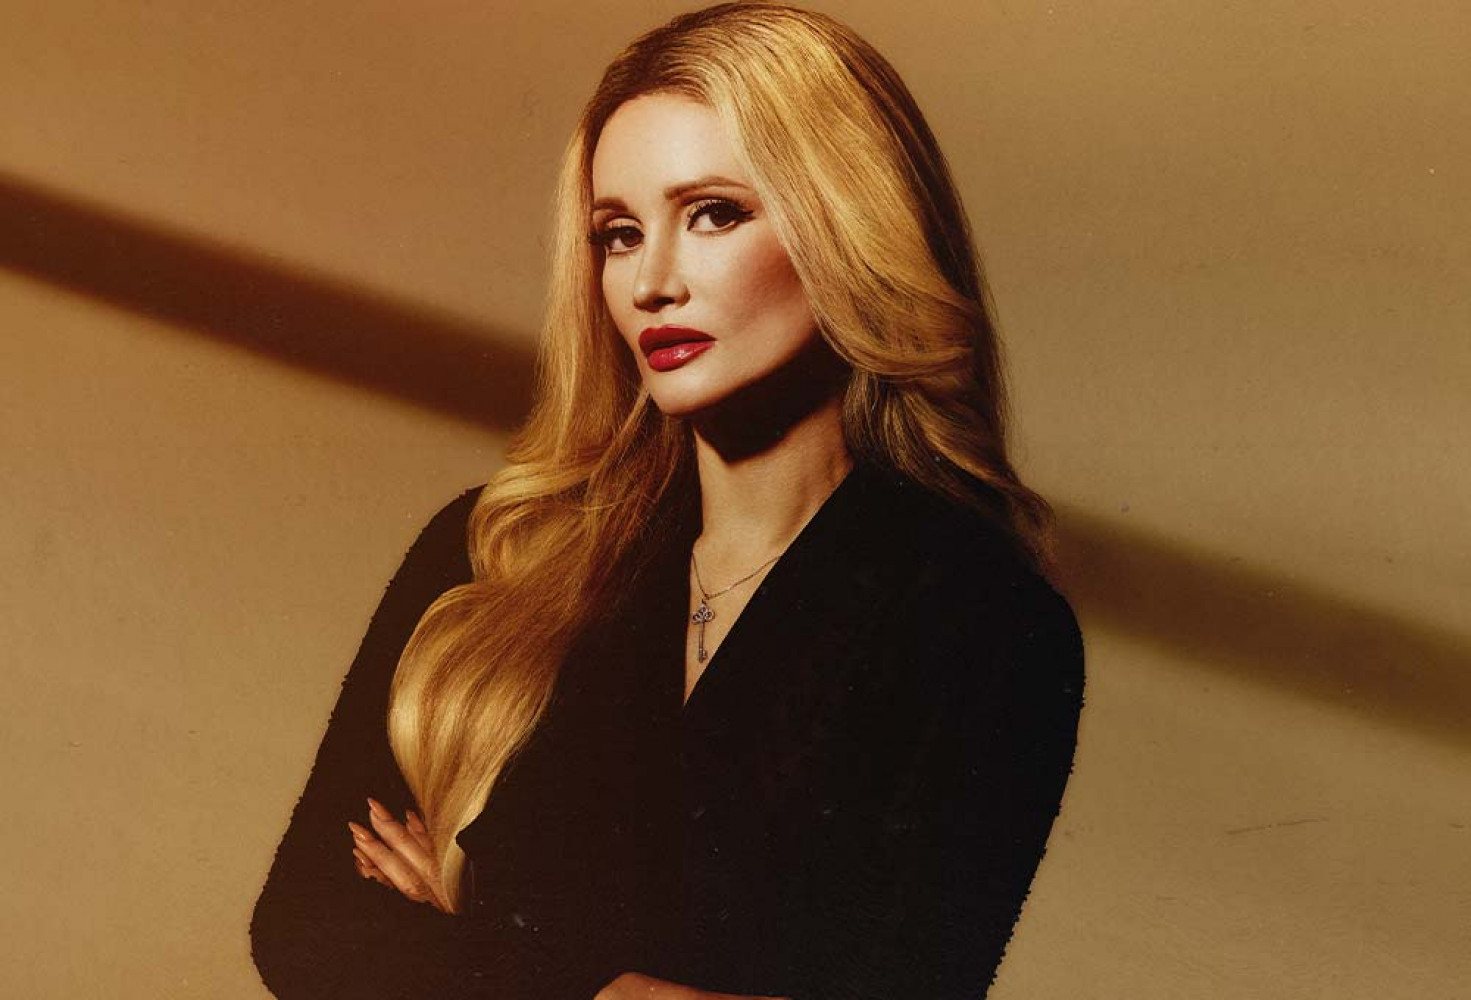 Eski Playboy modeli Holly Madison: “Eğlence sektöründe bazı riskli anlar vardır”